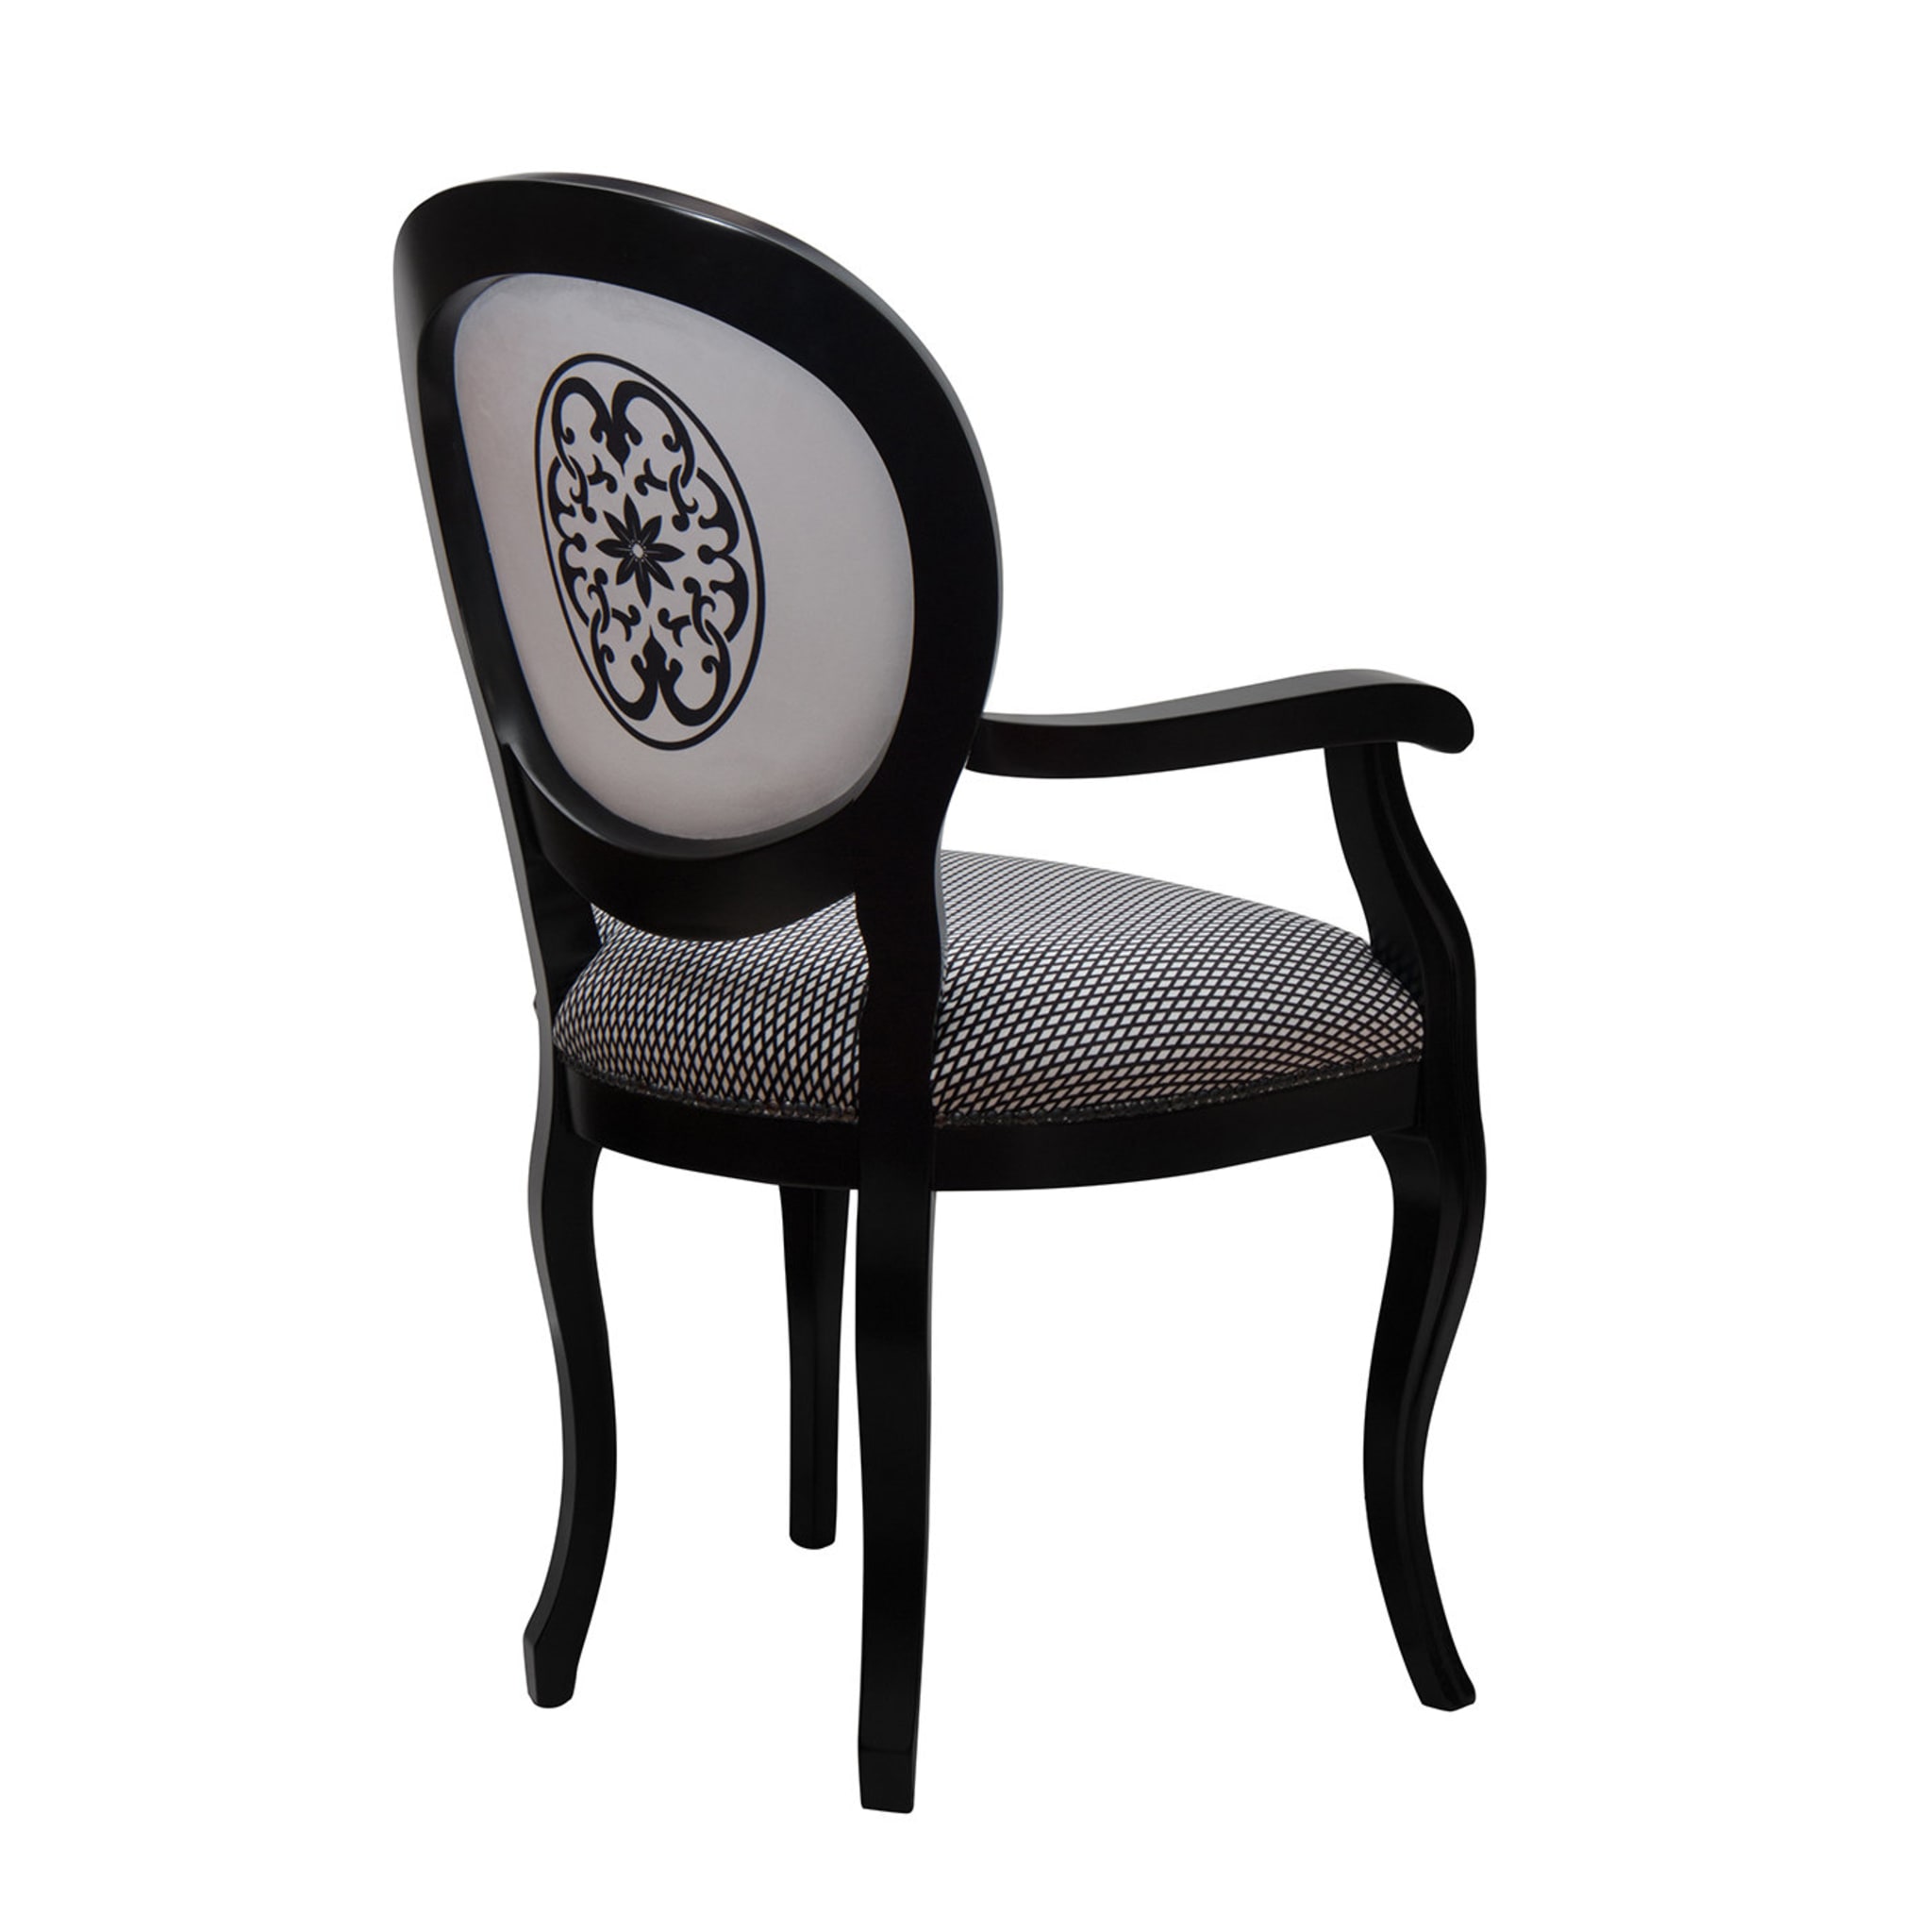 Terramia Cup Chair - Alternative view 1